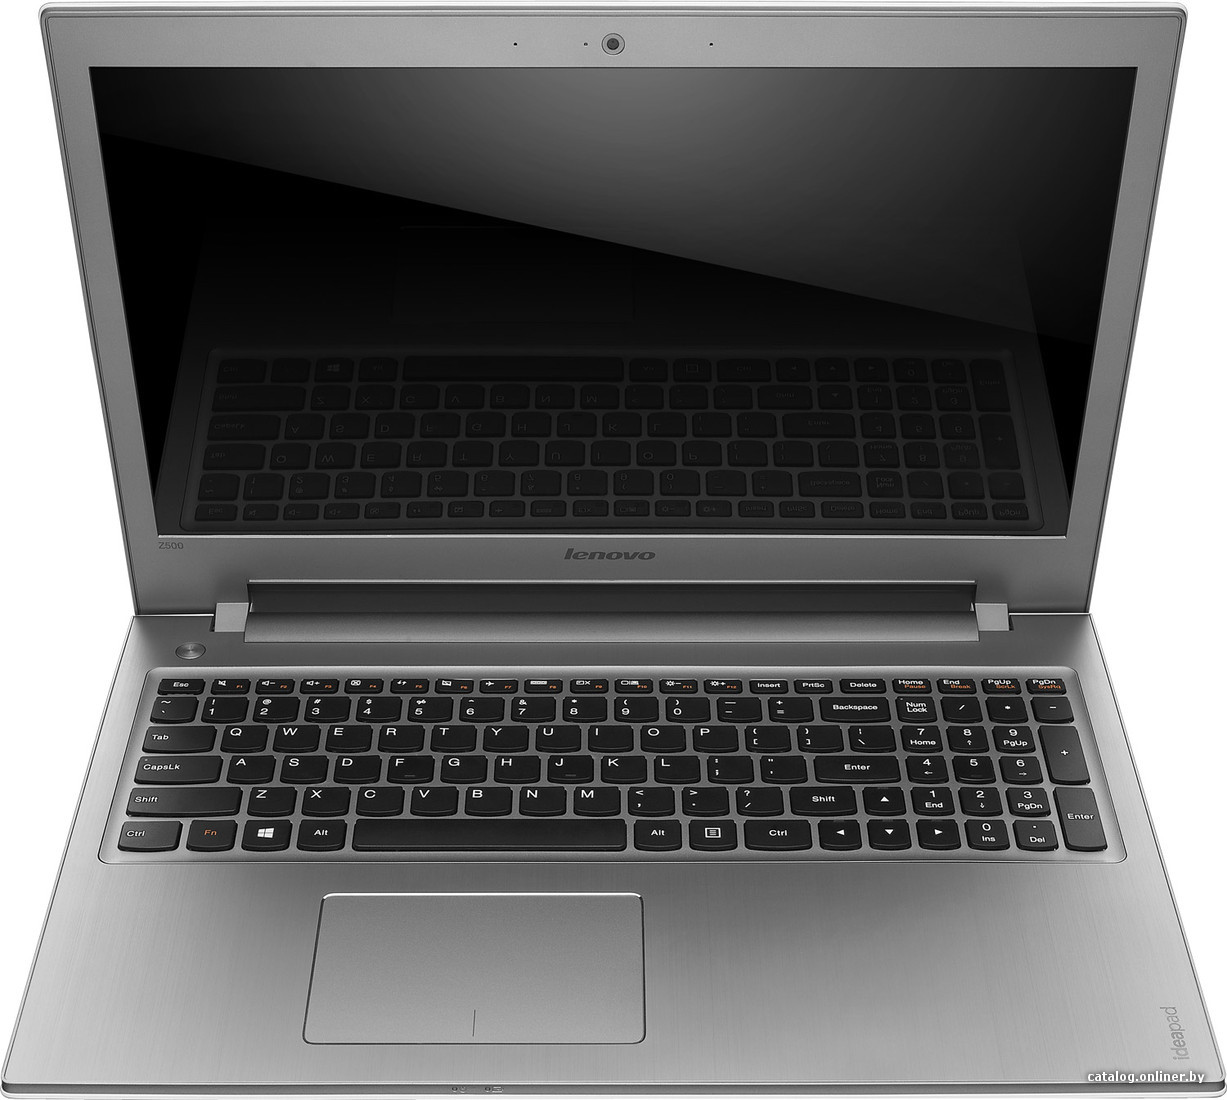 Черный экран при включении ноутбука: причины и решение проблемы